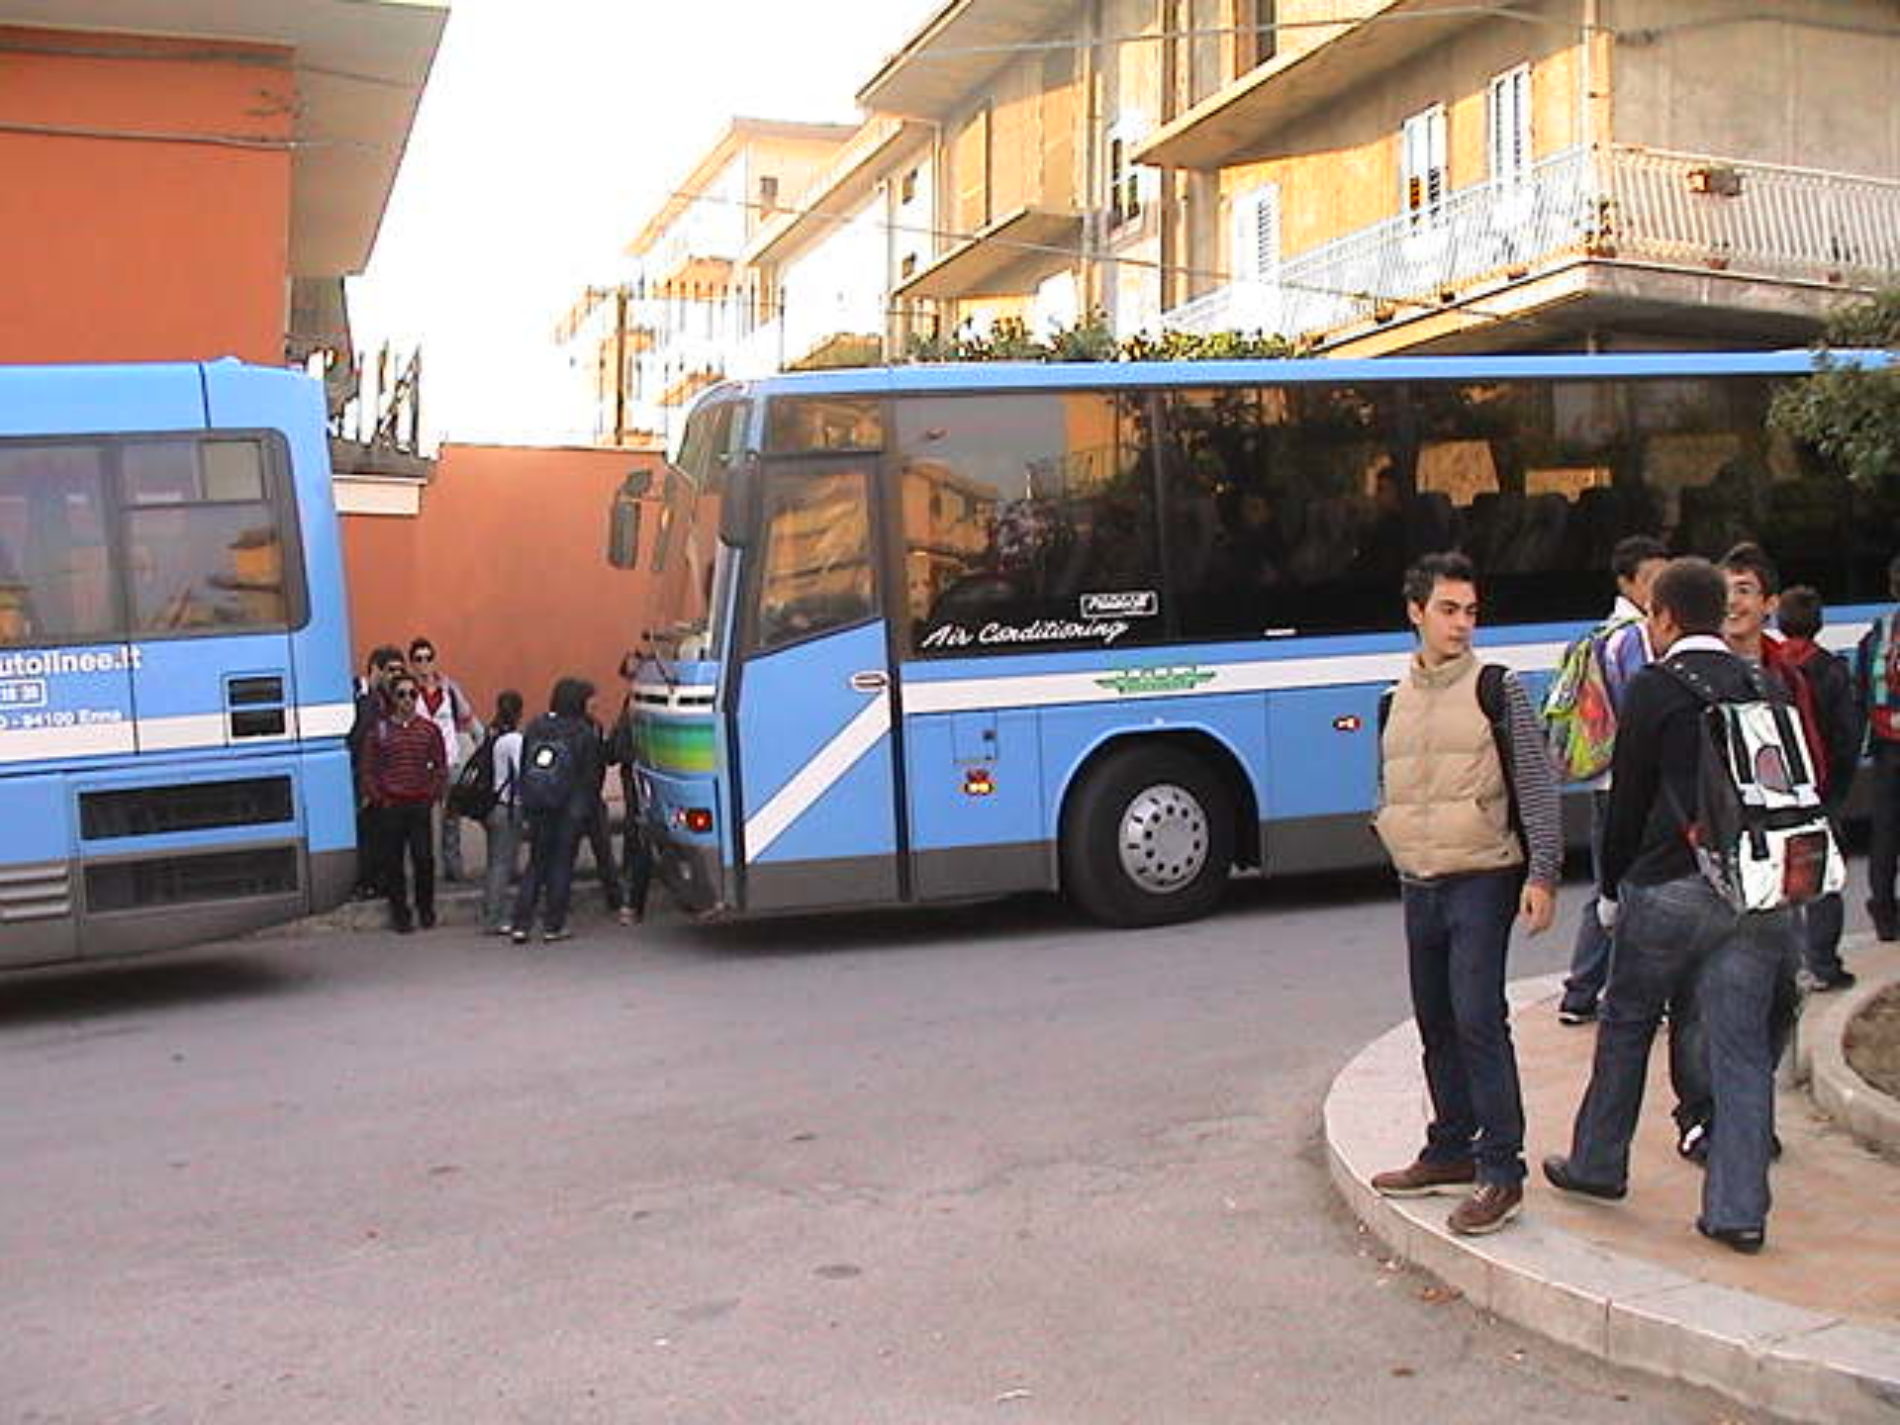 PIETRAPERZIA. Abbonamenti studenti pendolari e misure di sicurezza Anti-Covid